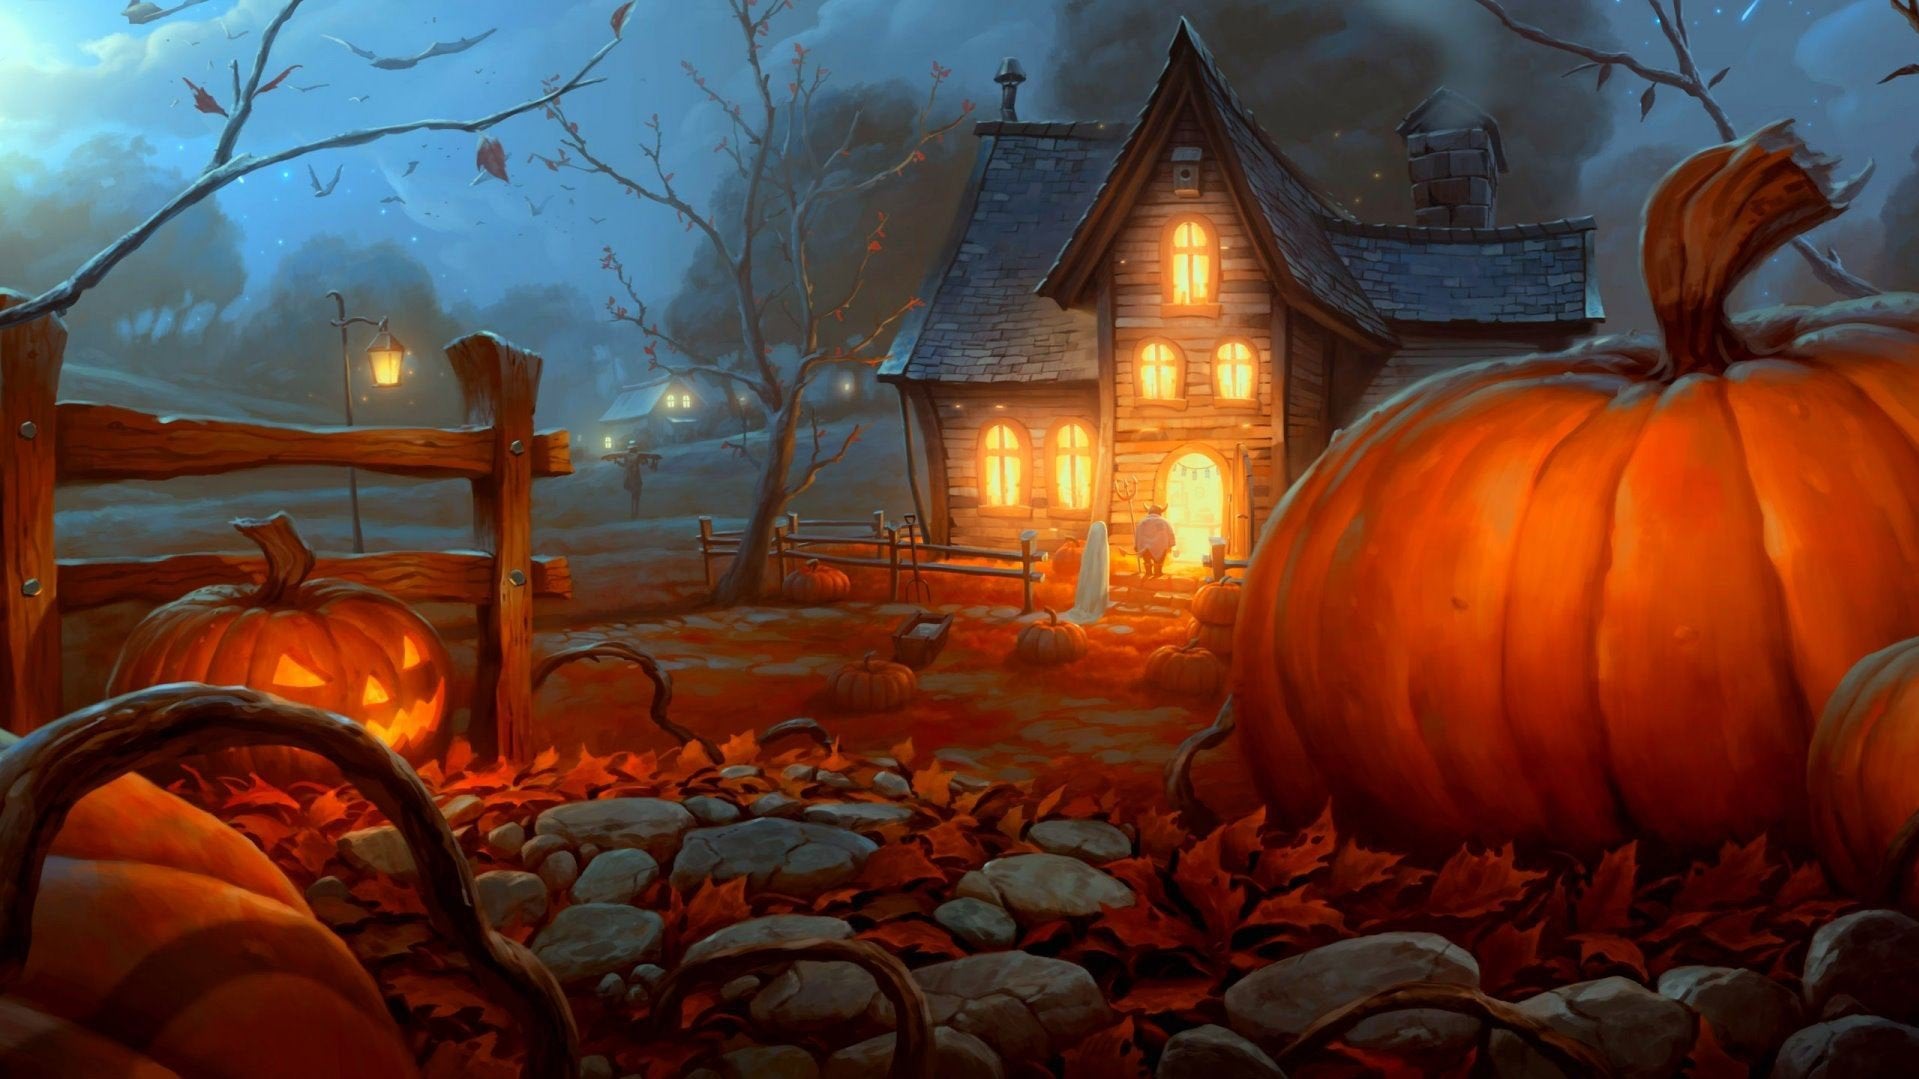 Easily my favorite Halloween wallpaper.: halloween